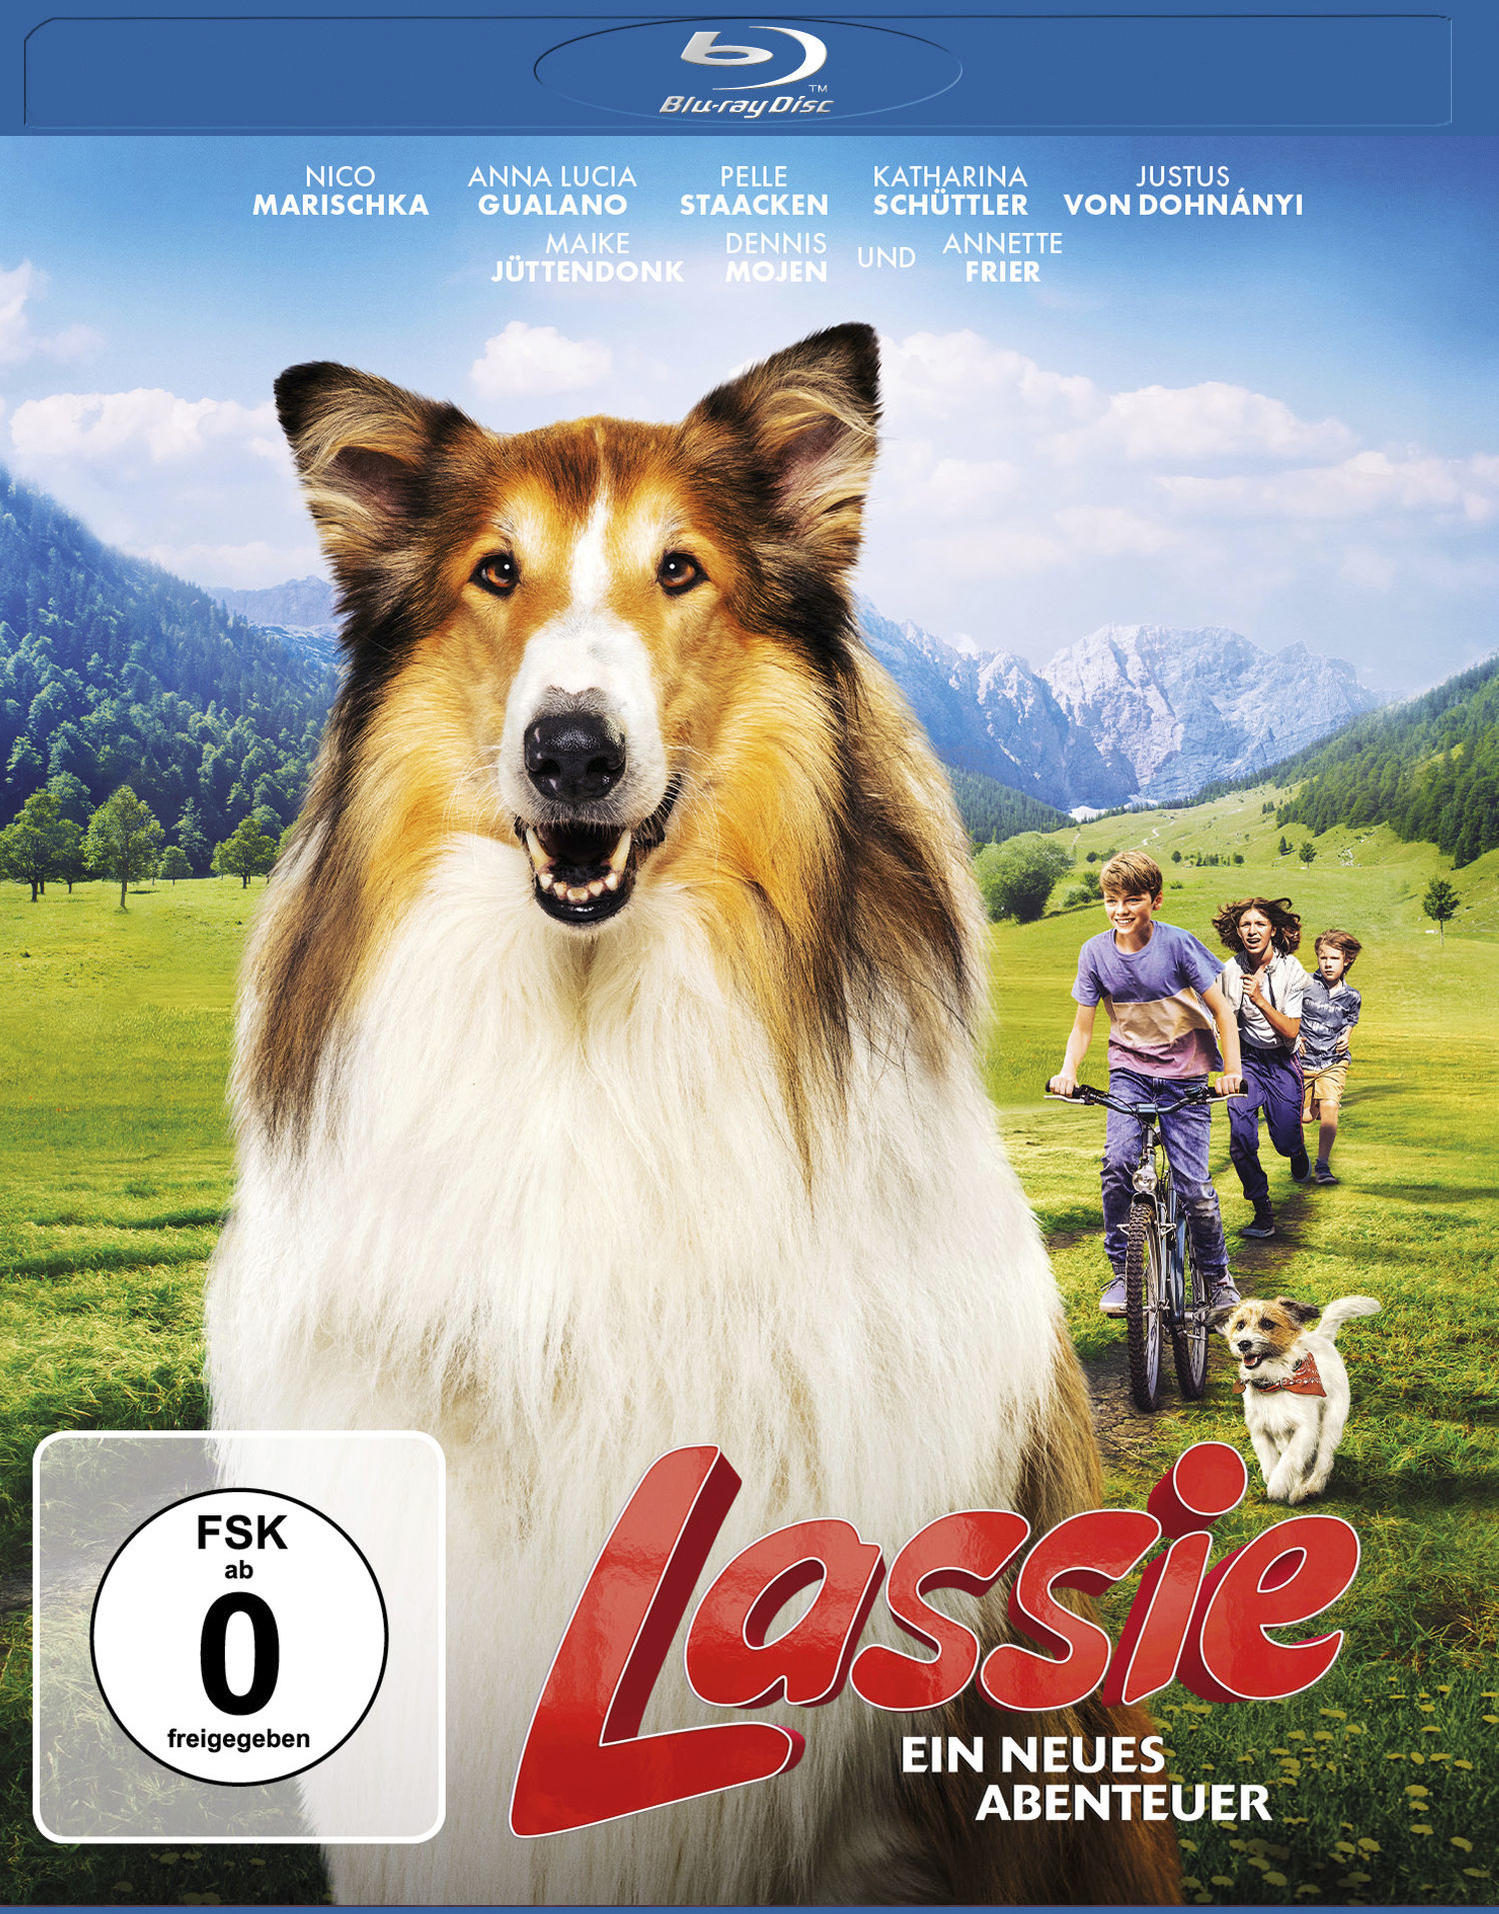 - Blu-ray Ein Lassie neues Abenteuer